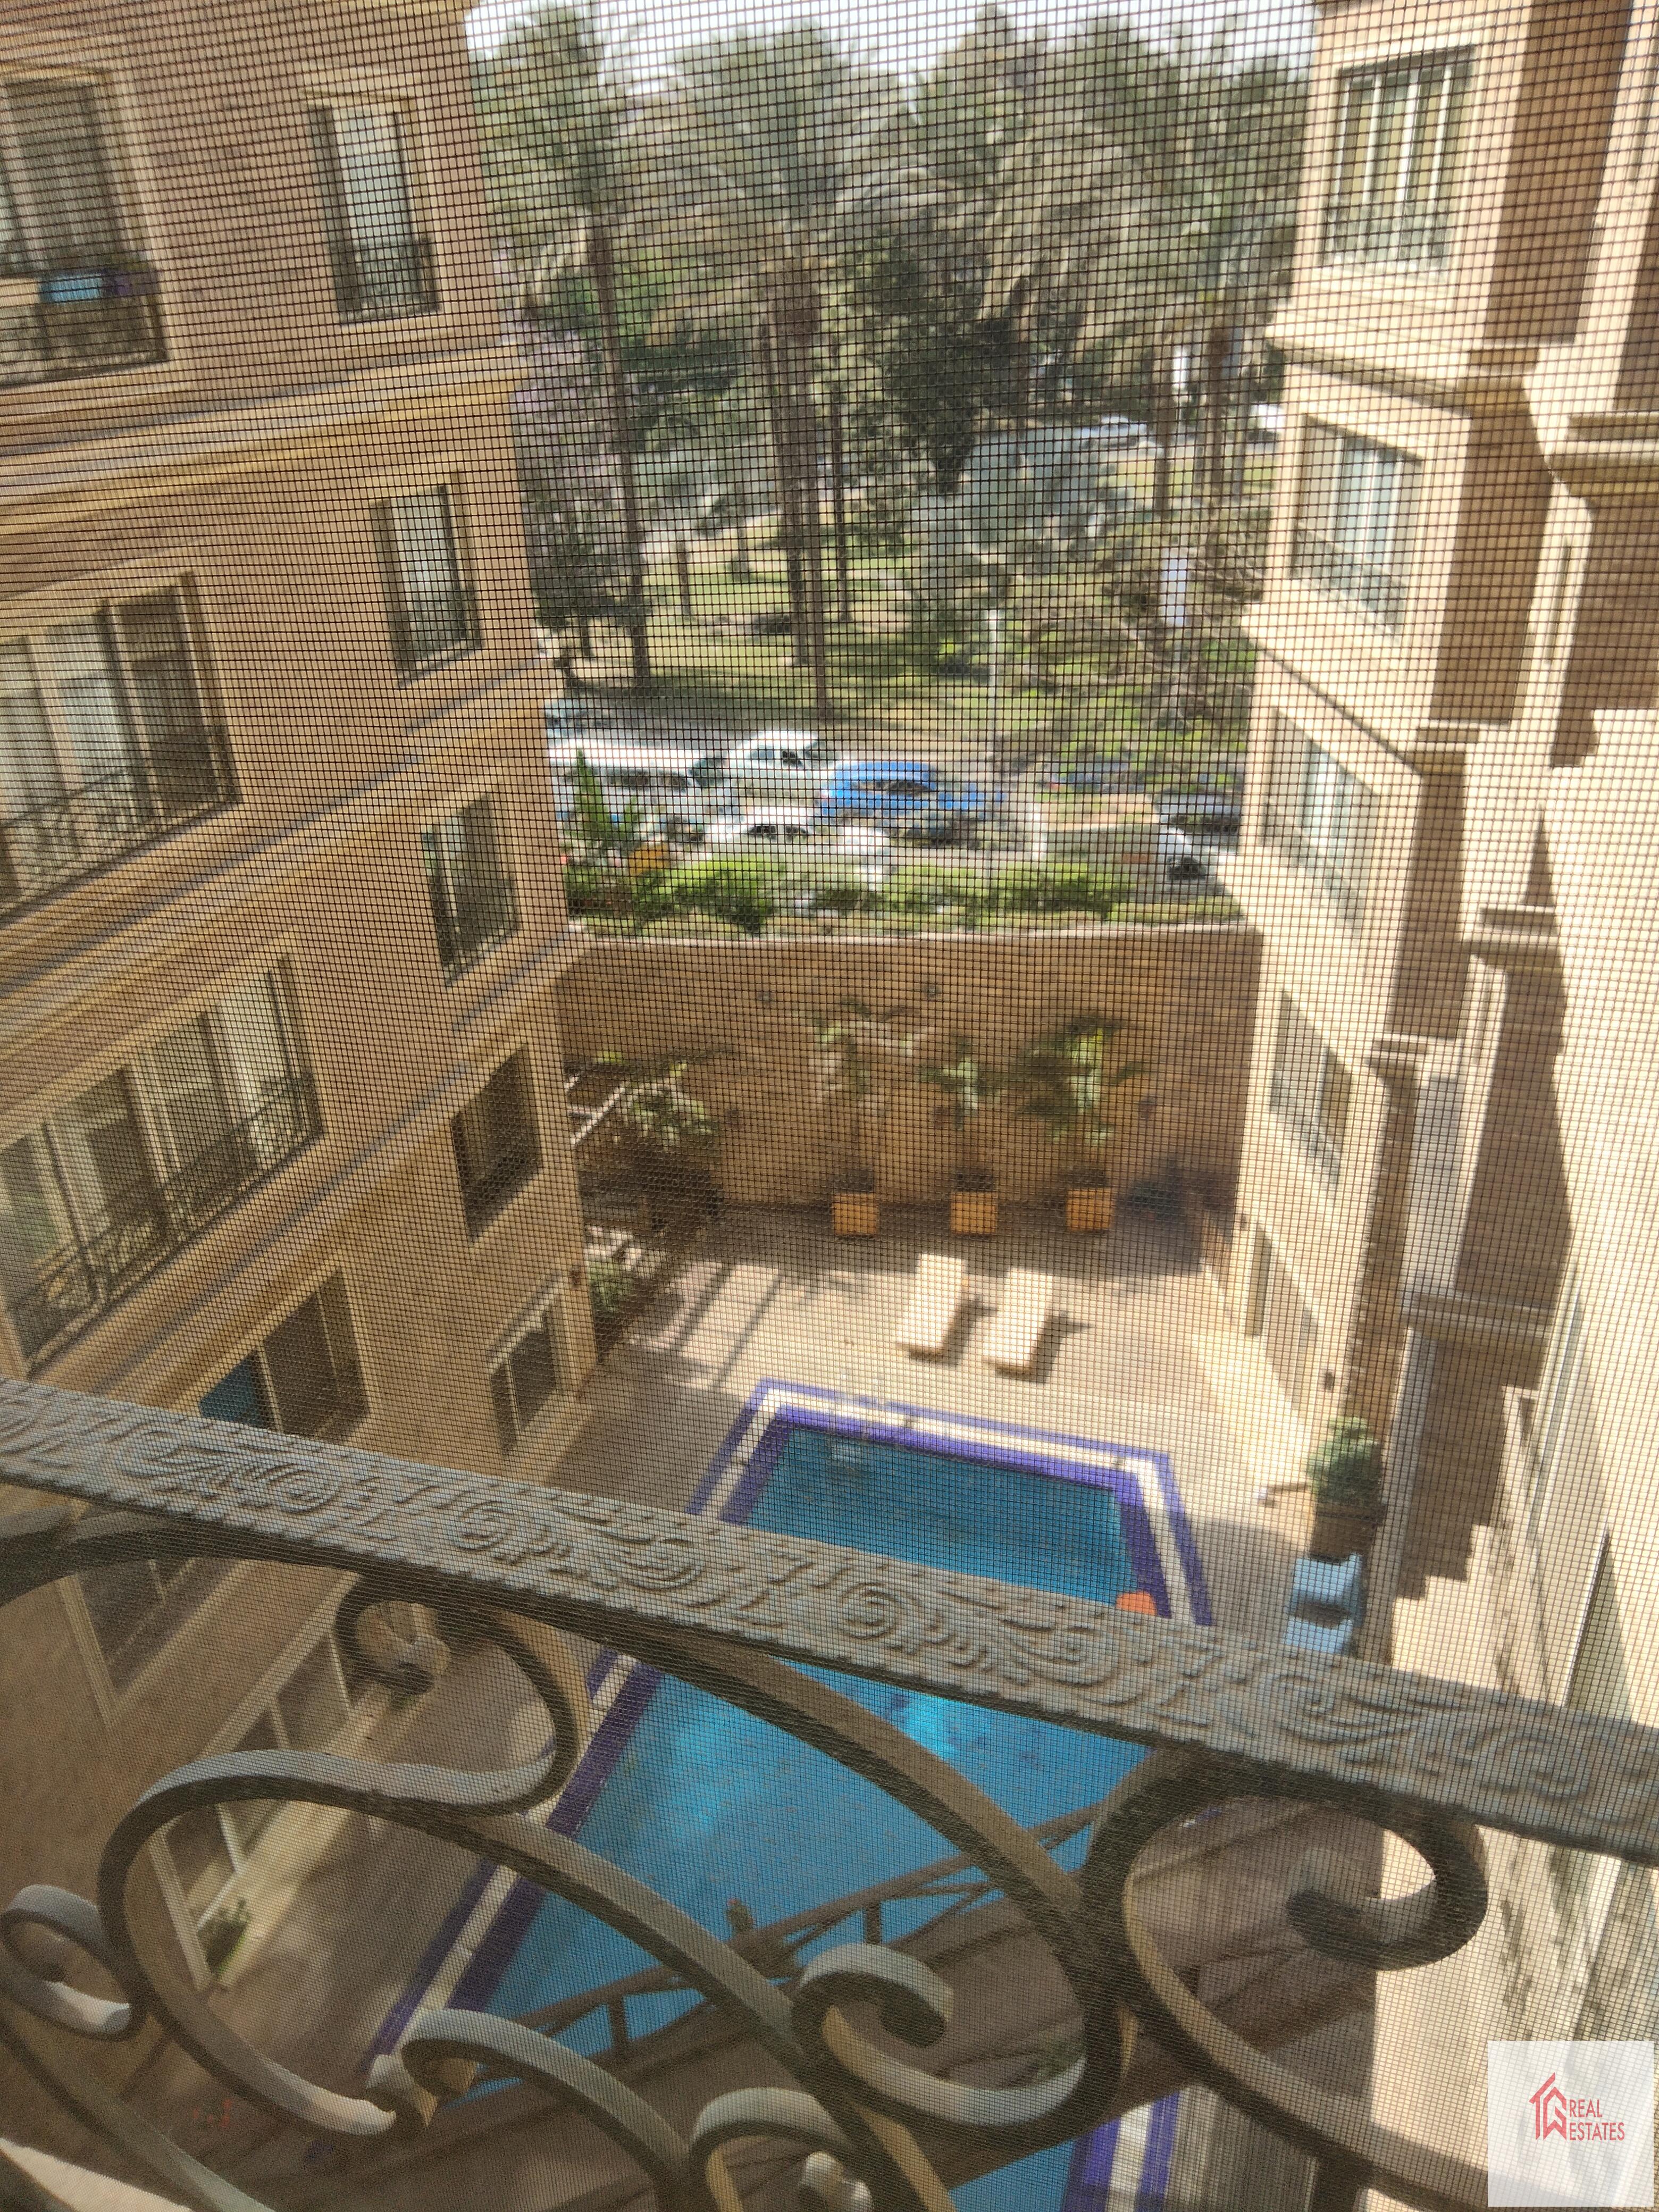 Penthouse dubleks kiralık 3 yatak odası 3 banyo maadi kraliyet bahçesi maadi Sarayat Kahire Mısır ortak spor salonu havuzu